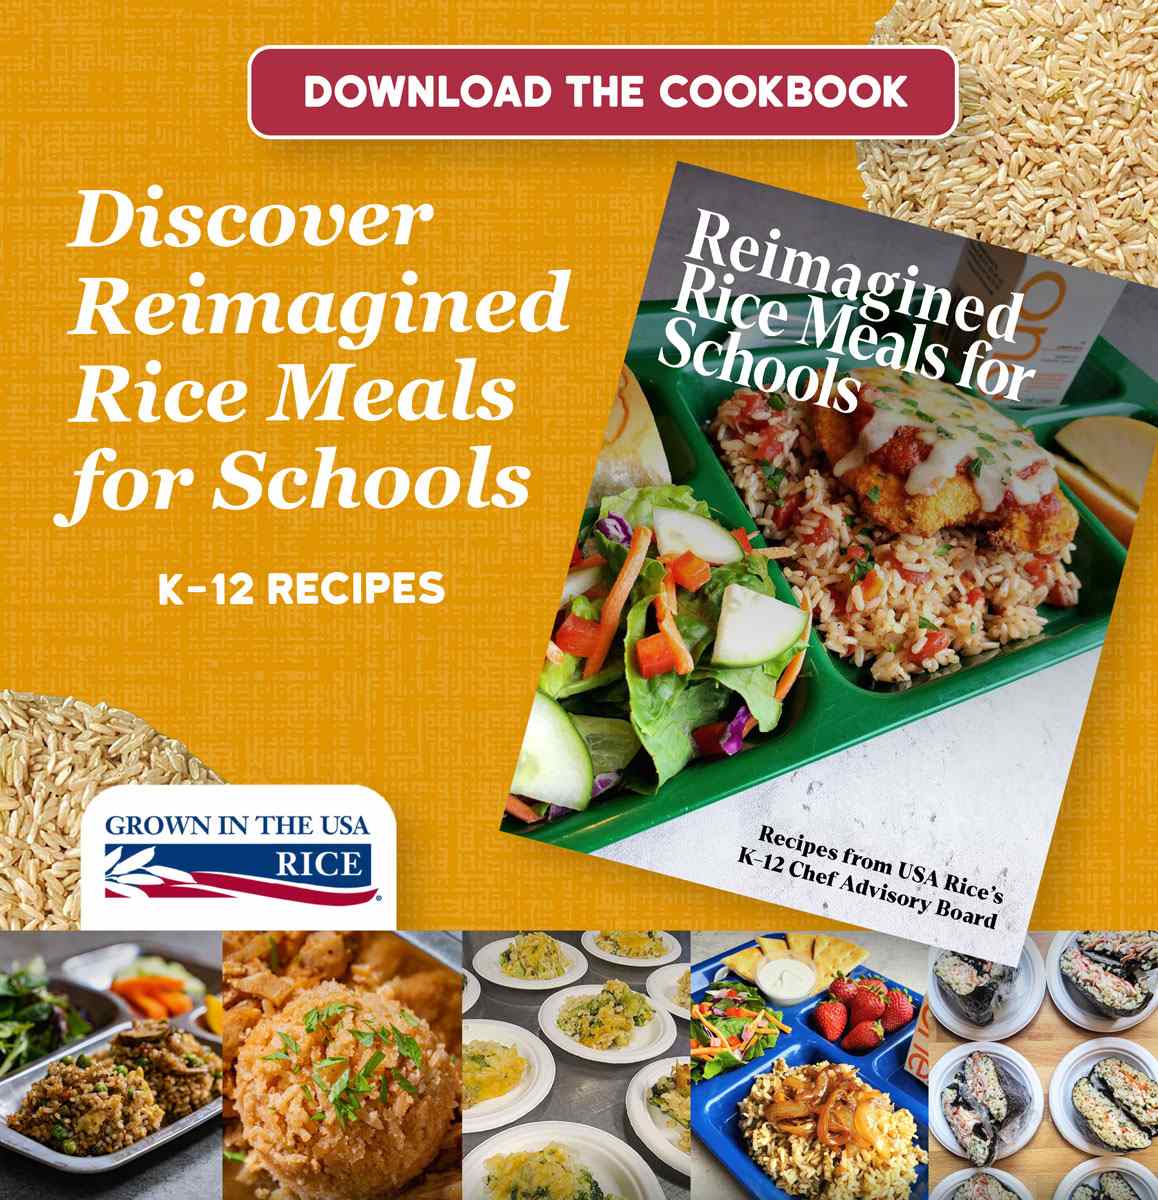 美国稻米协会发布新大米食谱指南 pic